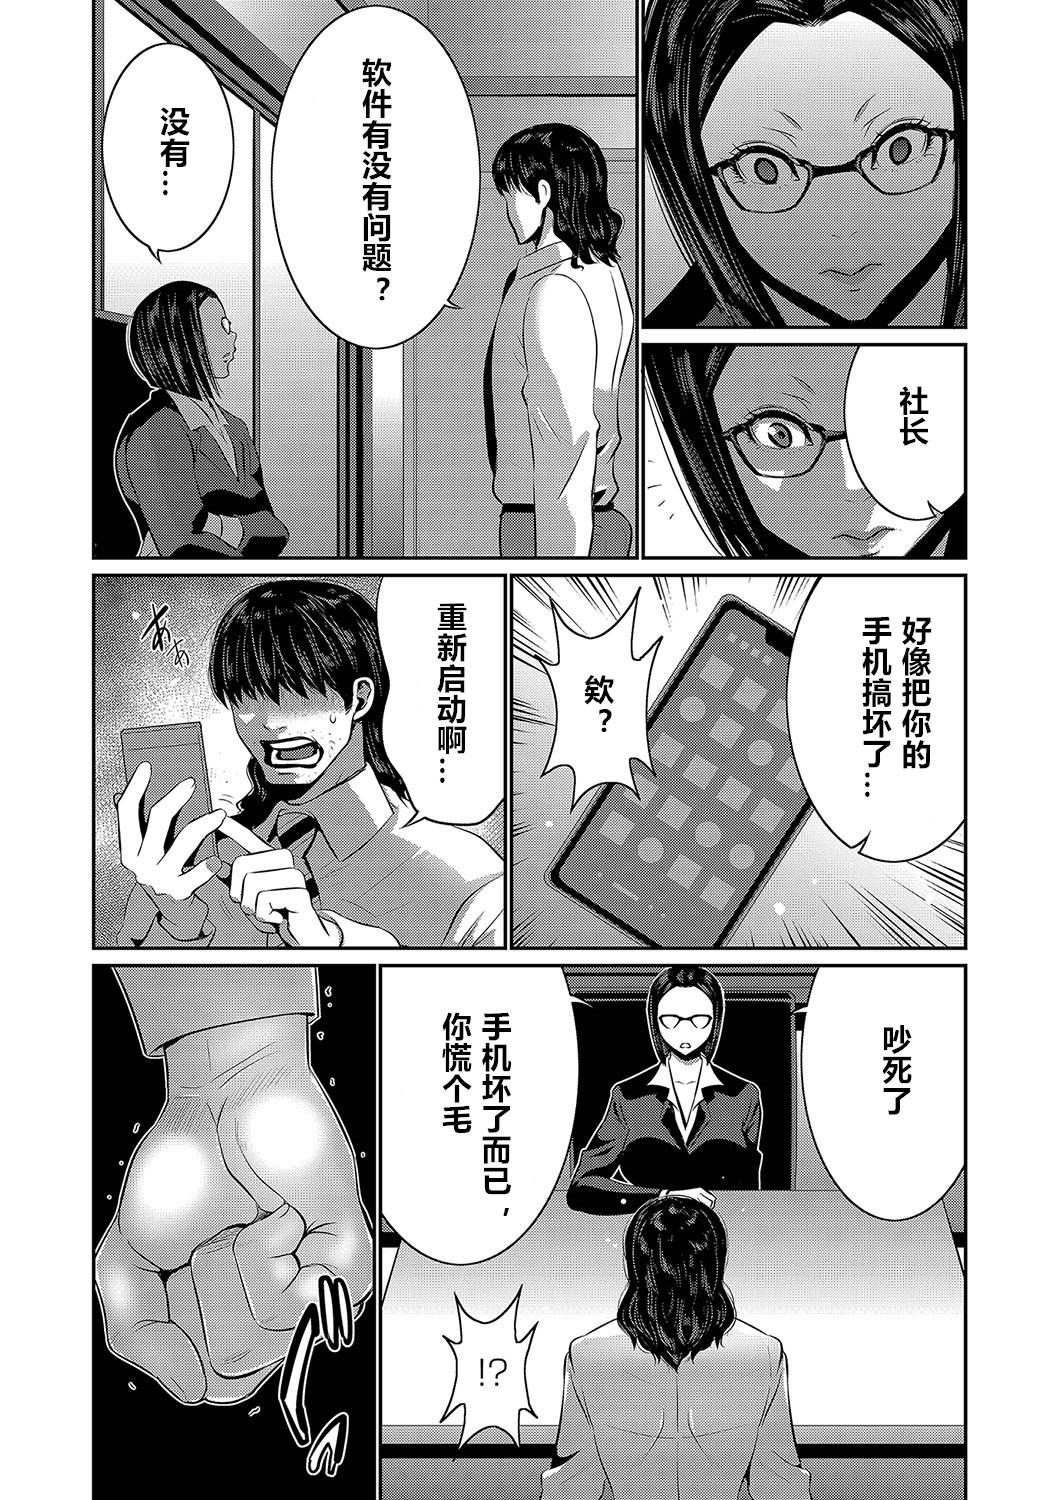 Gostoso Hi Appli Install Shimashita!! Ch. 1-2 Strange - Page 6